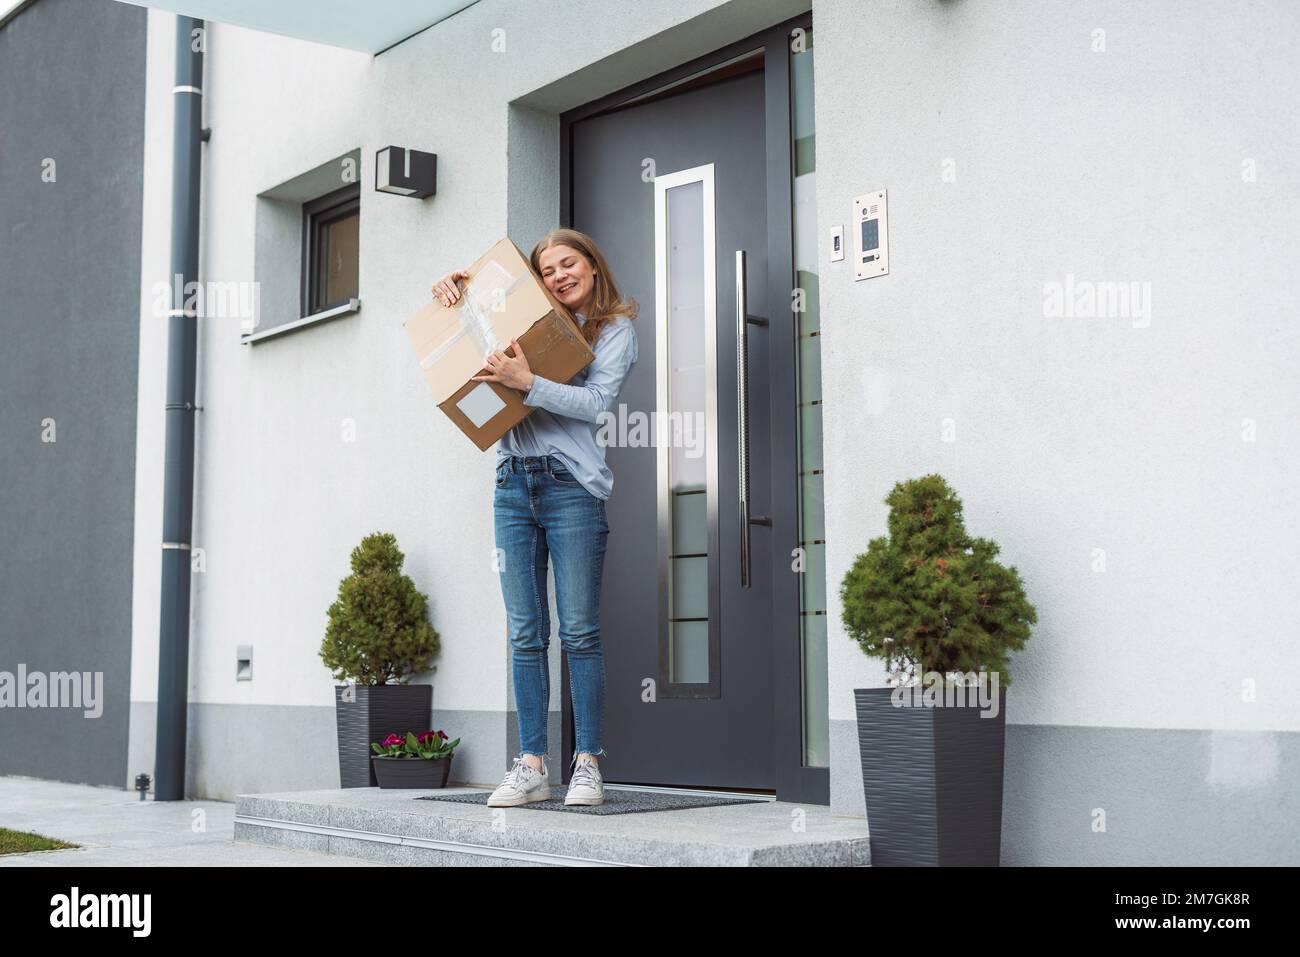 Eine glückliche junge Frau mit einem Postboten aus Pappe, die gerade an ihre Haustür gebracht wurde Stockfoto